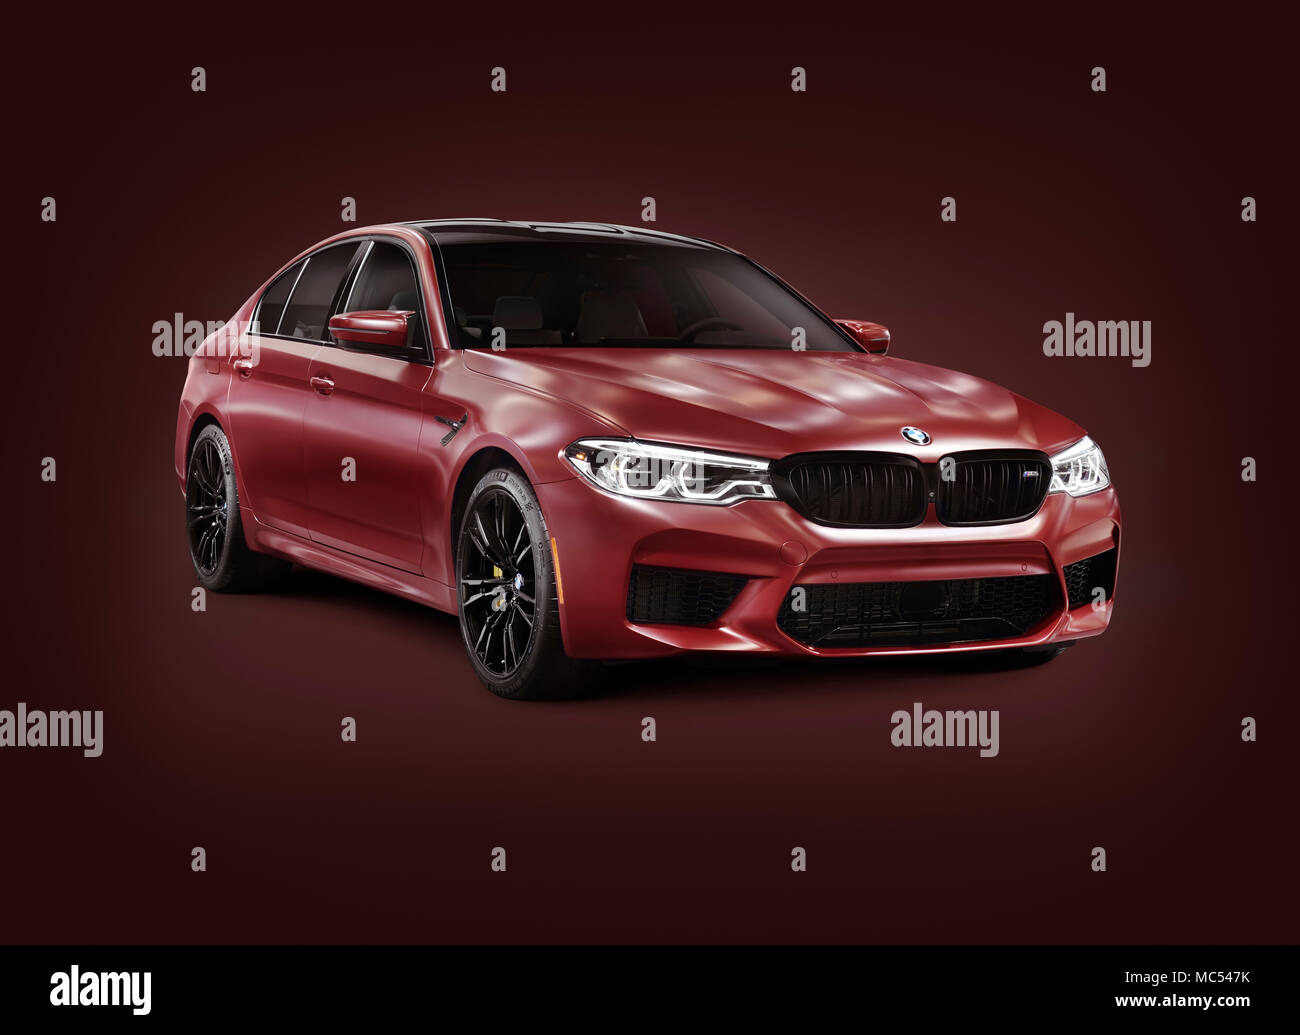 Sexta generación de BMW M5 2018, desempeño de coches, sedán deportivo de lujo, 5-series en rojo oscuro color mate. Aislada, con un trazado de recorte en Borgoña backgro Foto de stock